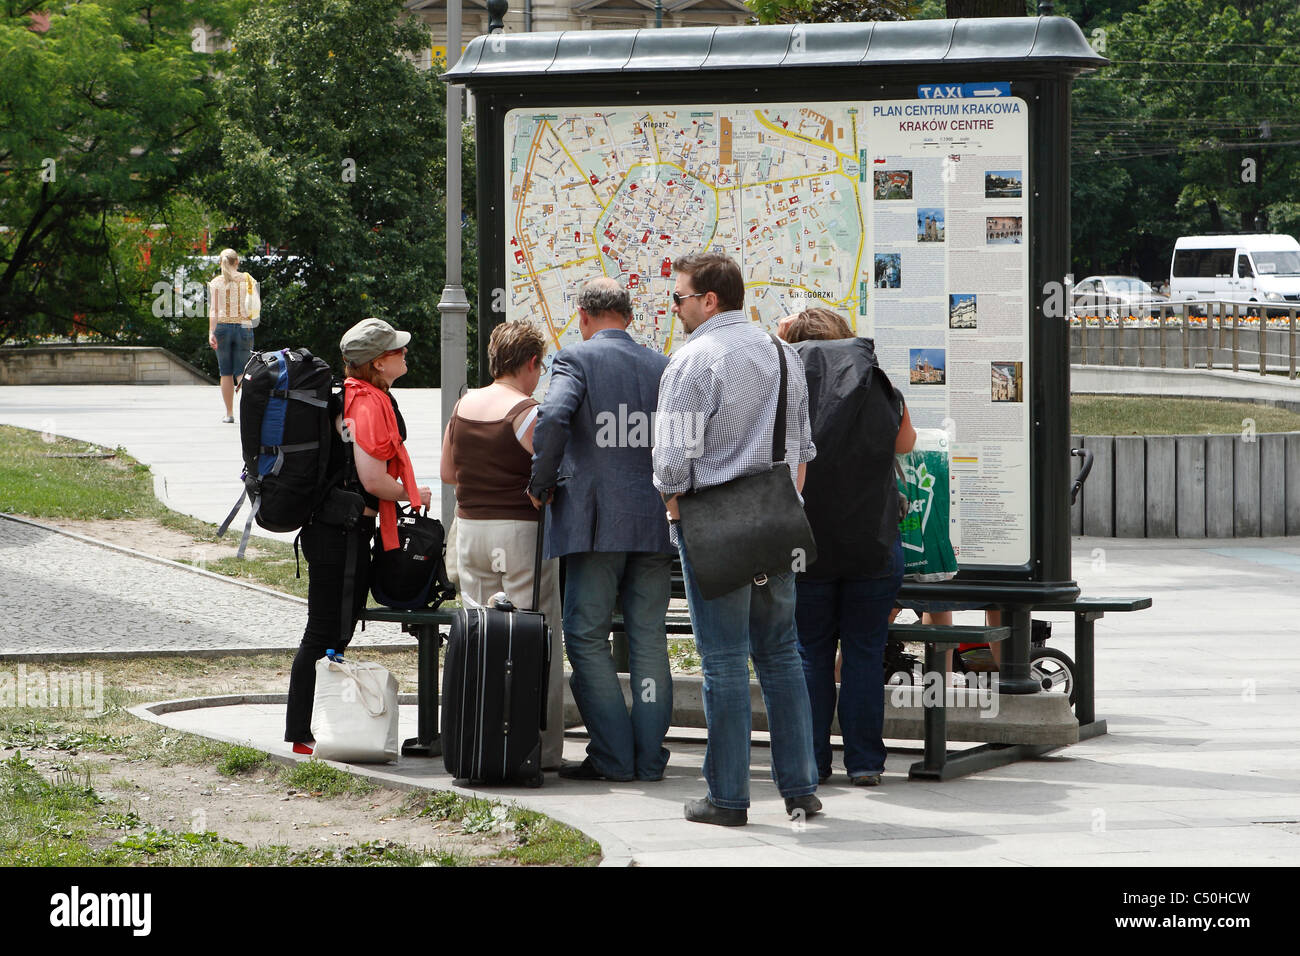 Gruppo di visitatori nella parte anteriore del grande mappa della città. Cracovia in Polonia. Foto Stock